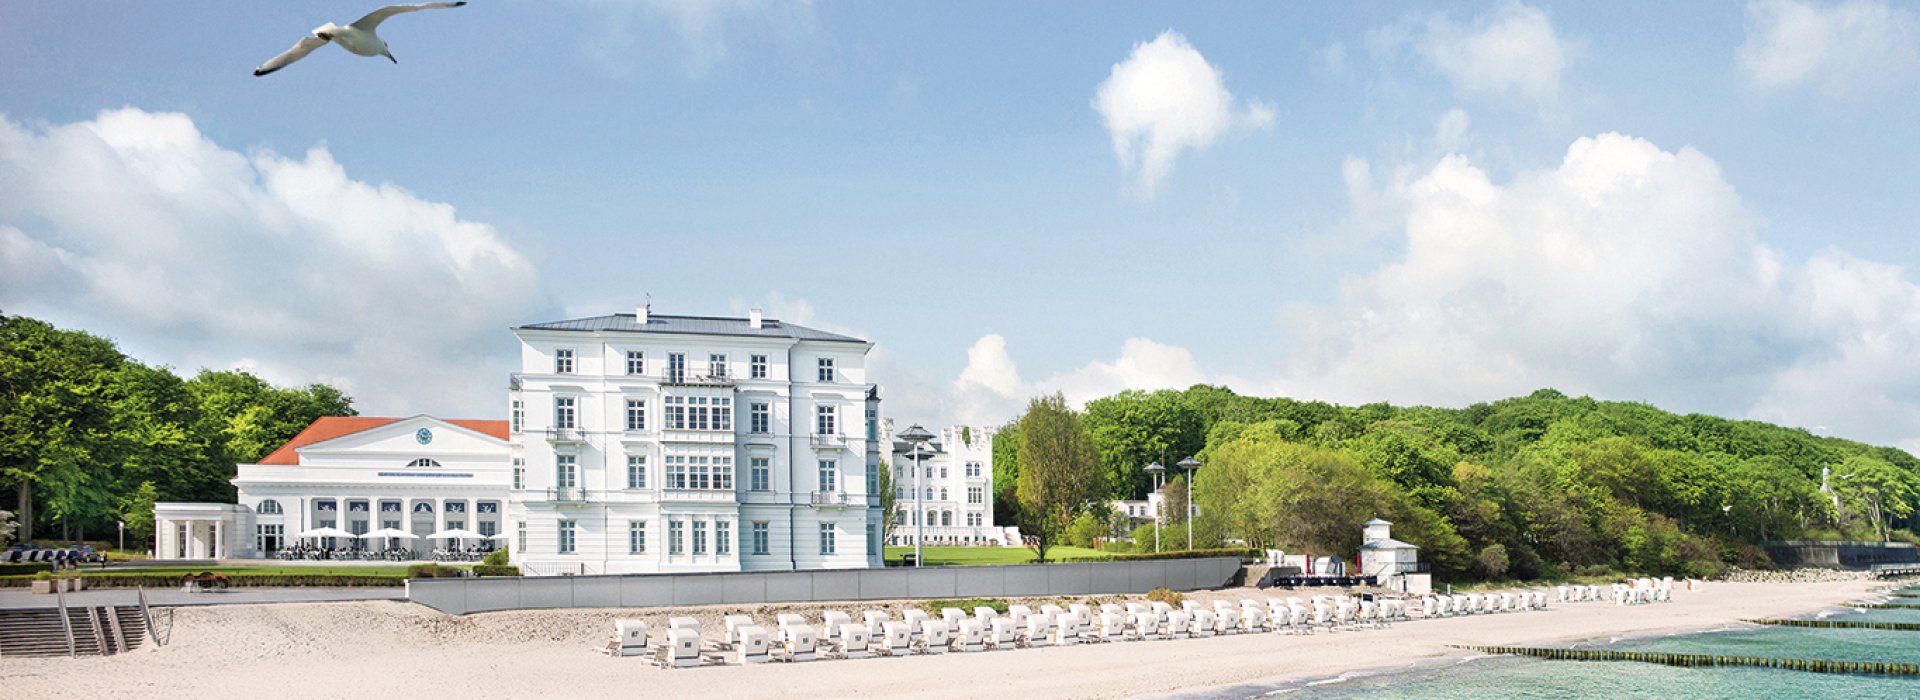 Grandhotel Heiligendamm - Sommerfrische